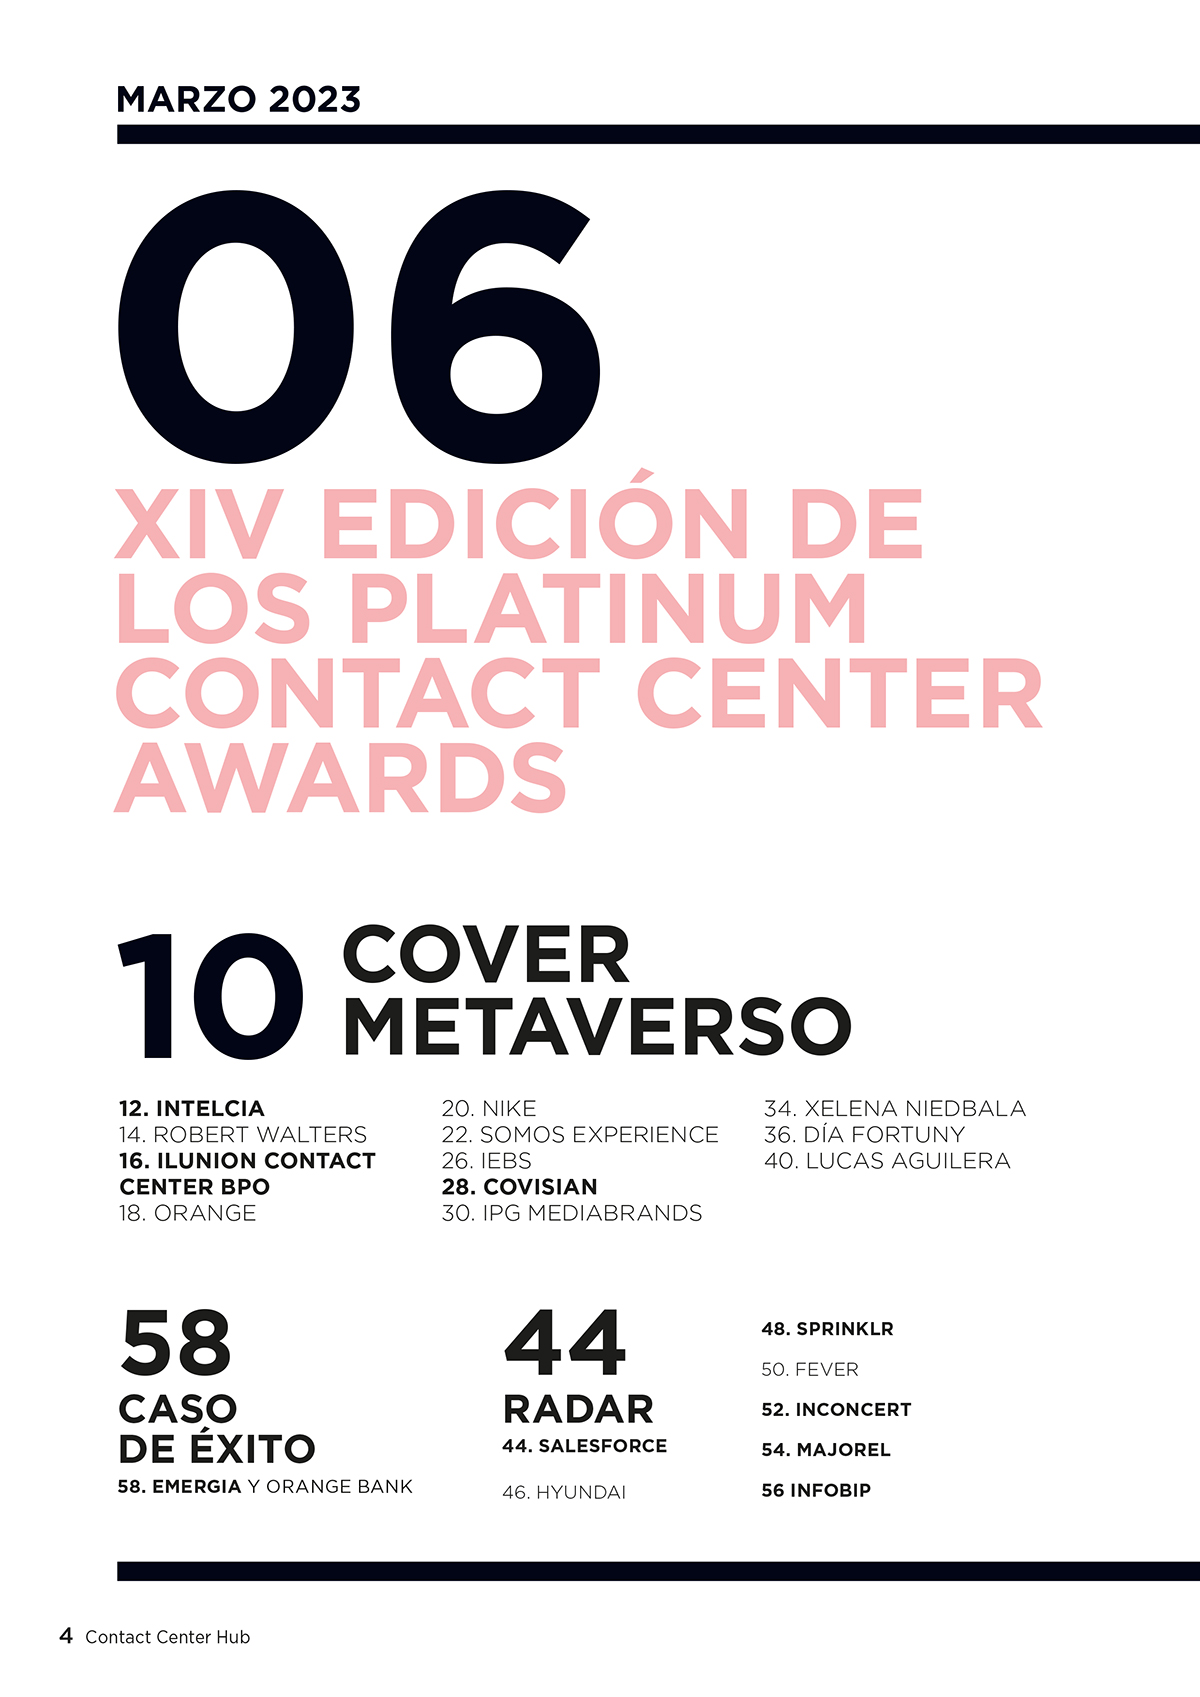 Contact Center Hub Nº 113